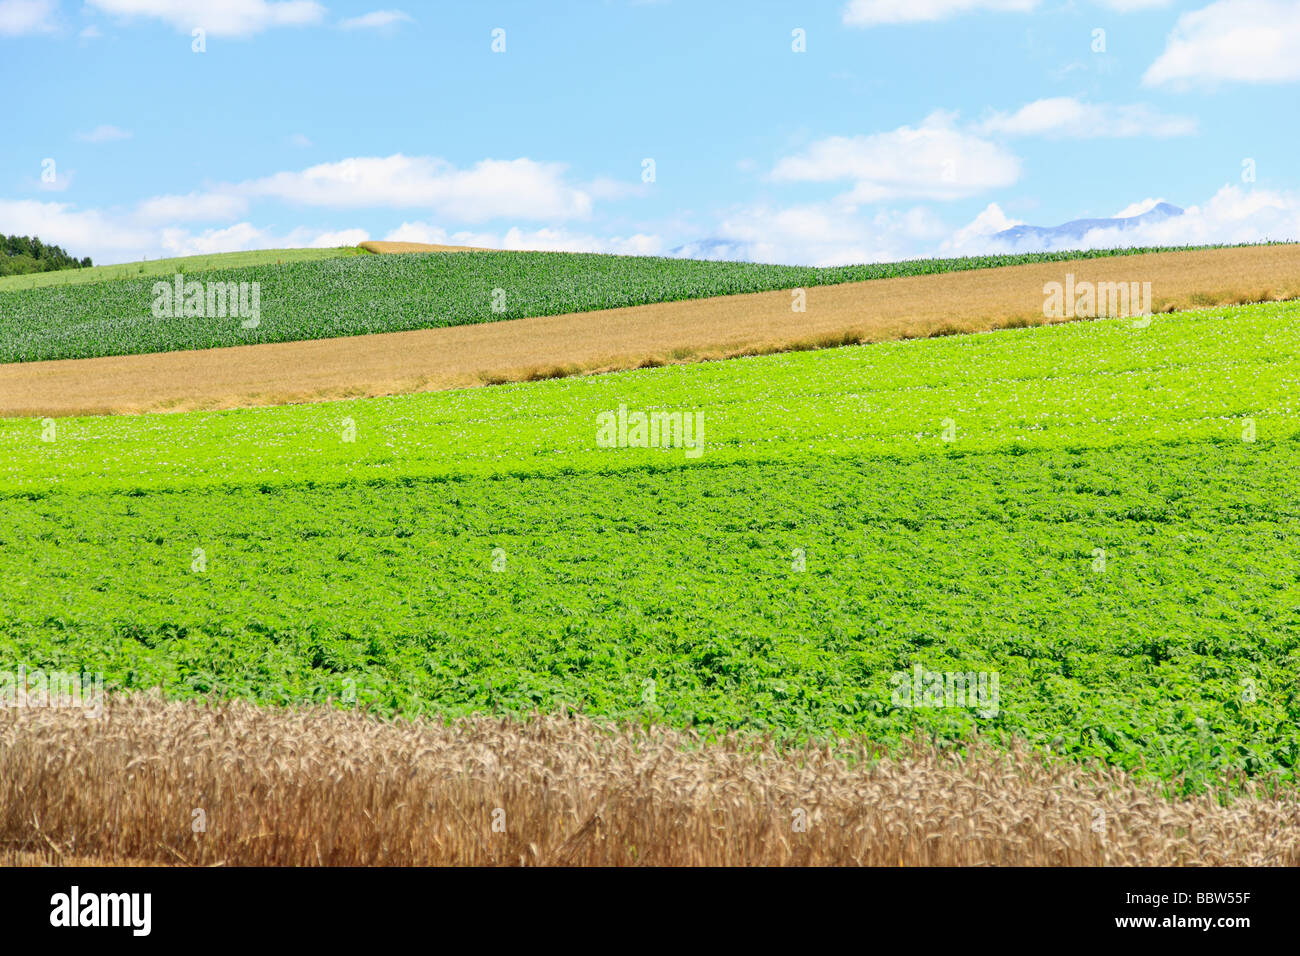 Las plantas verdes y cultivos de trigo en un campo Foto de stock